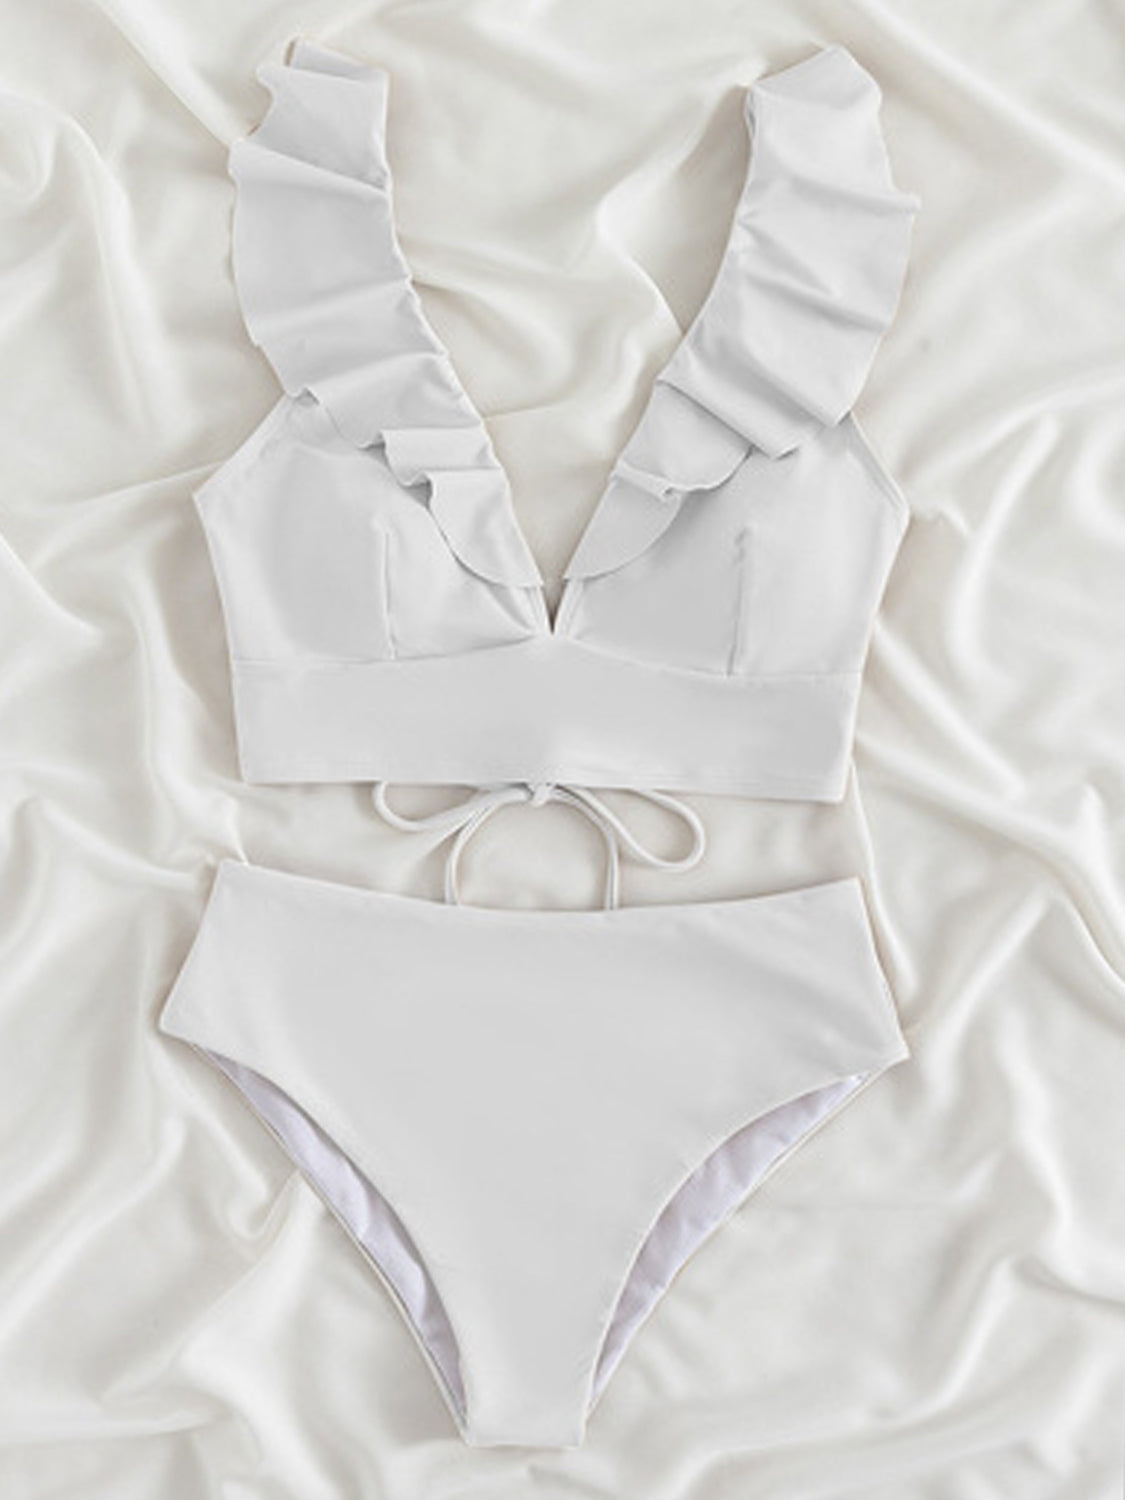 TEEK - Ruffled V-Neck Sleeveless Bikini SWIMWEAR TEEK Trend White S 